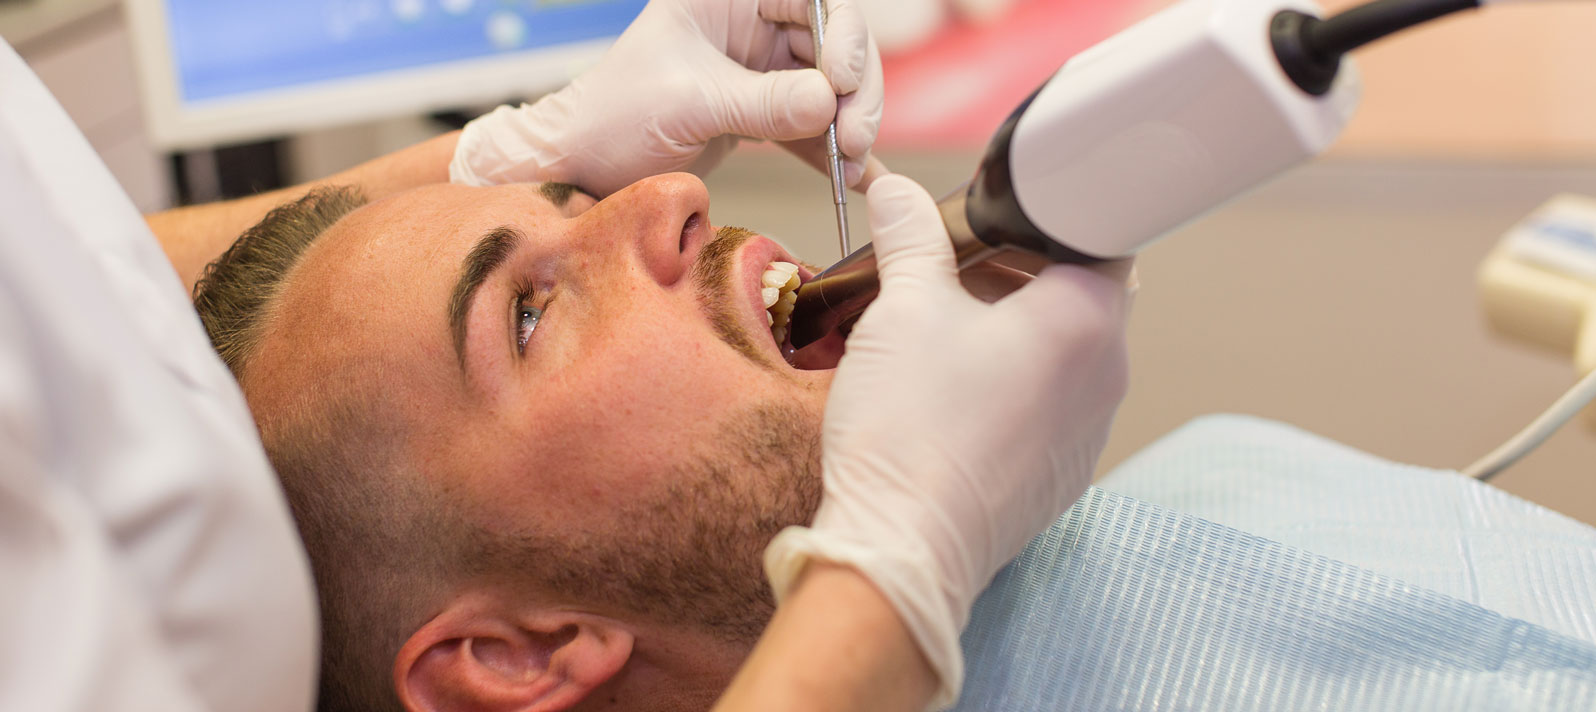 Tratando a un paciente con problema de endodoncia